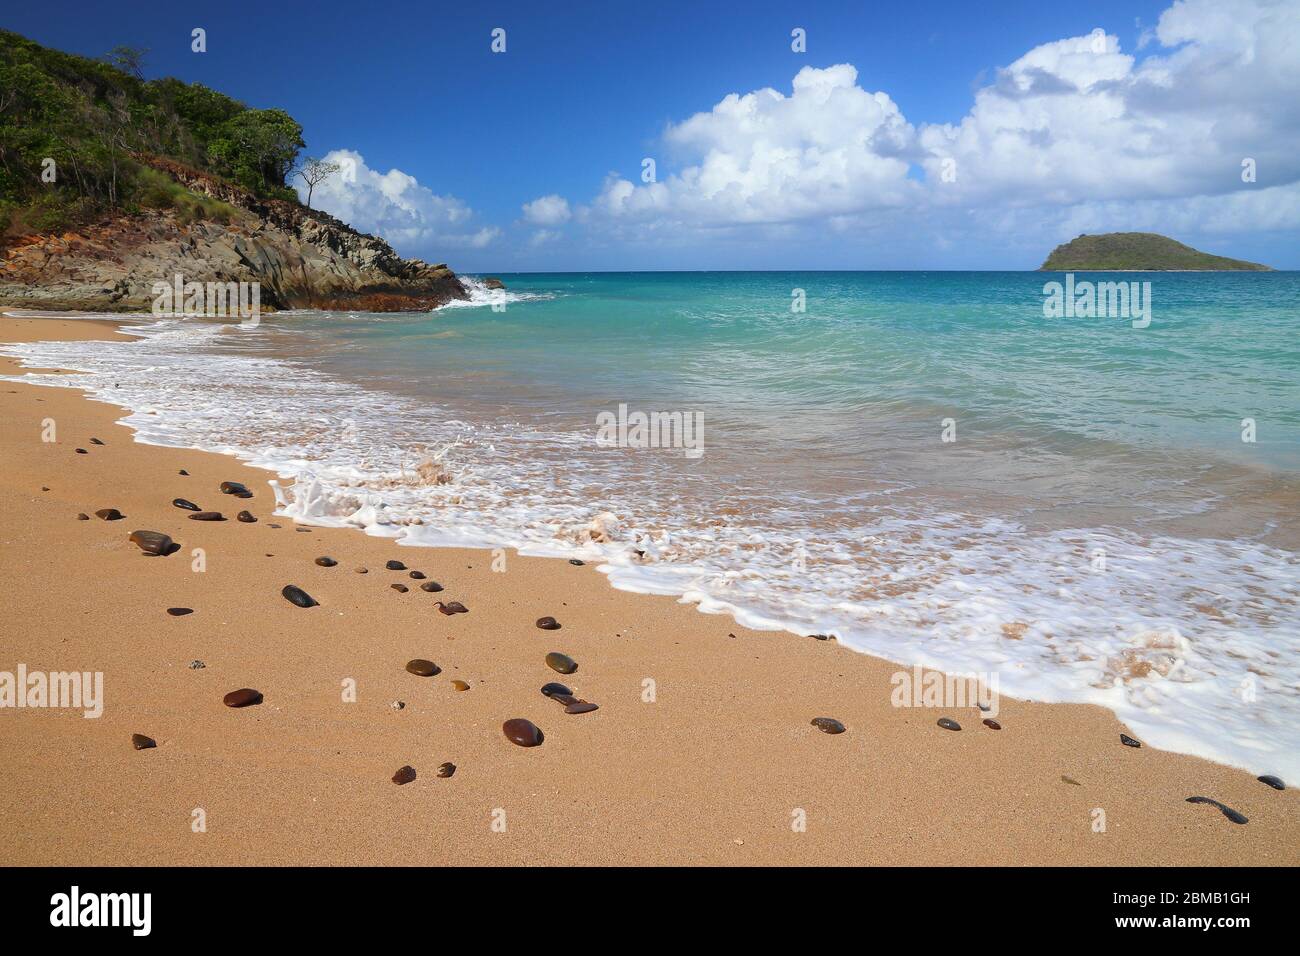 Guadeloupe Sandstrand von Basse-Terre Insel. Karibische Urlaubslandschaft. Strand von Tillet (Plage de Tillet). Stockfoto